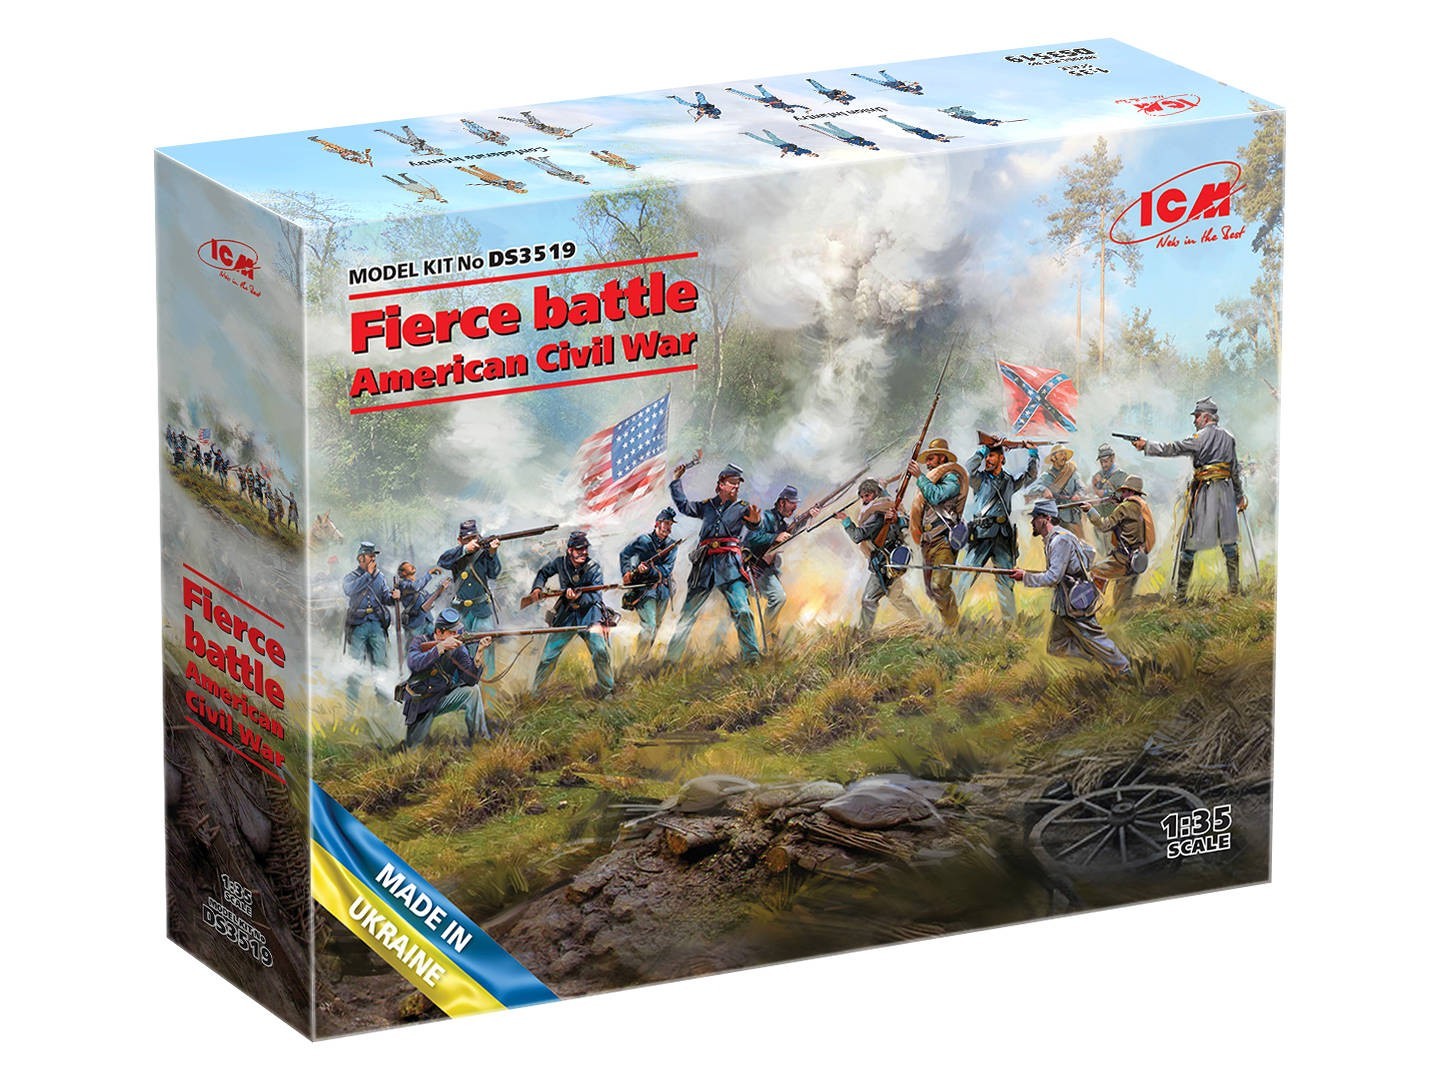 ✔ Fierce battle. American Civil War